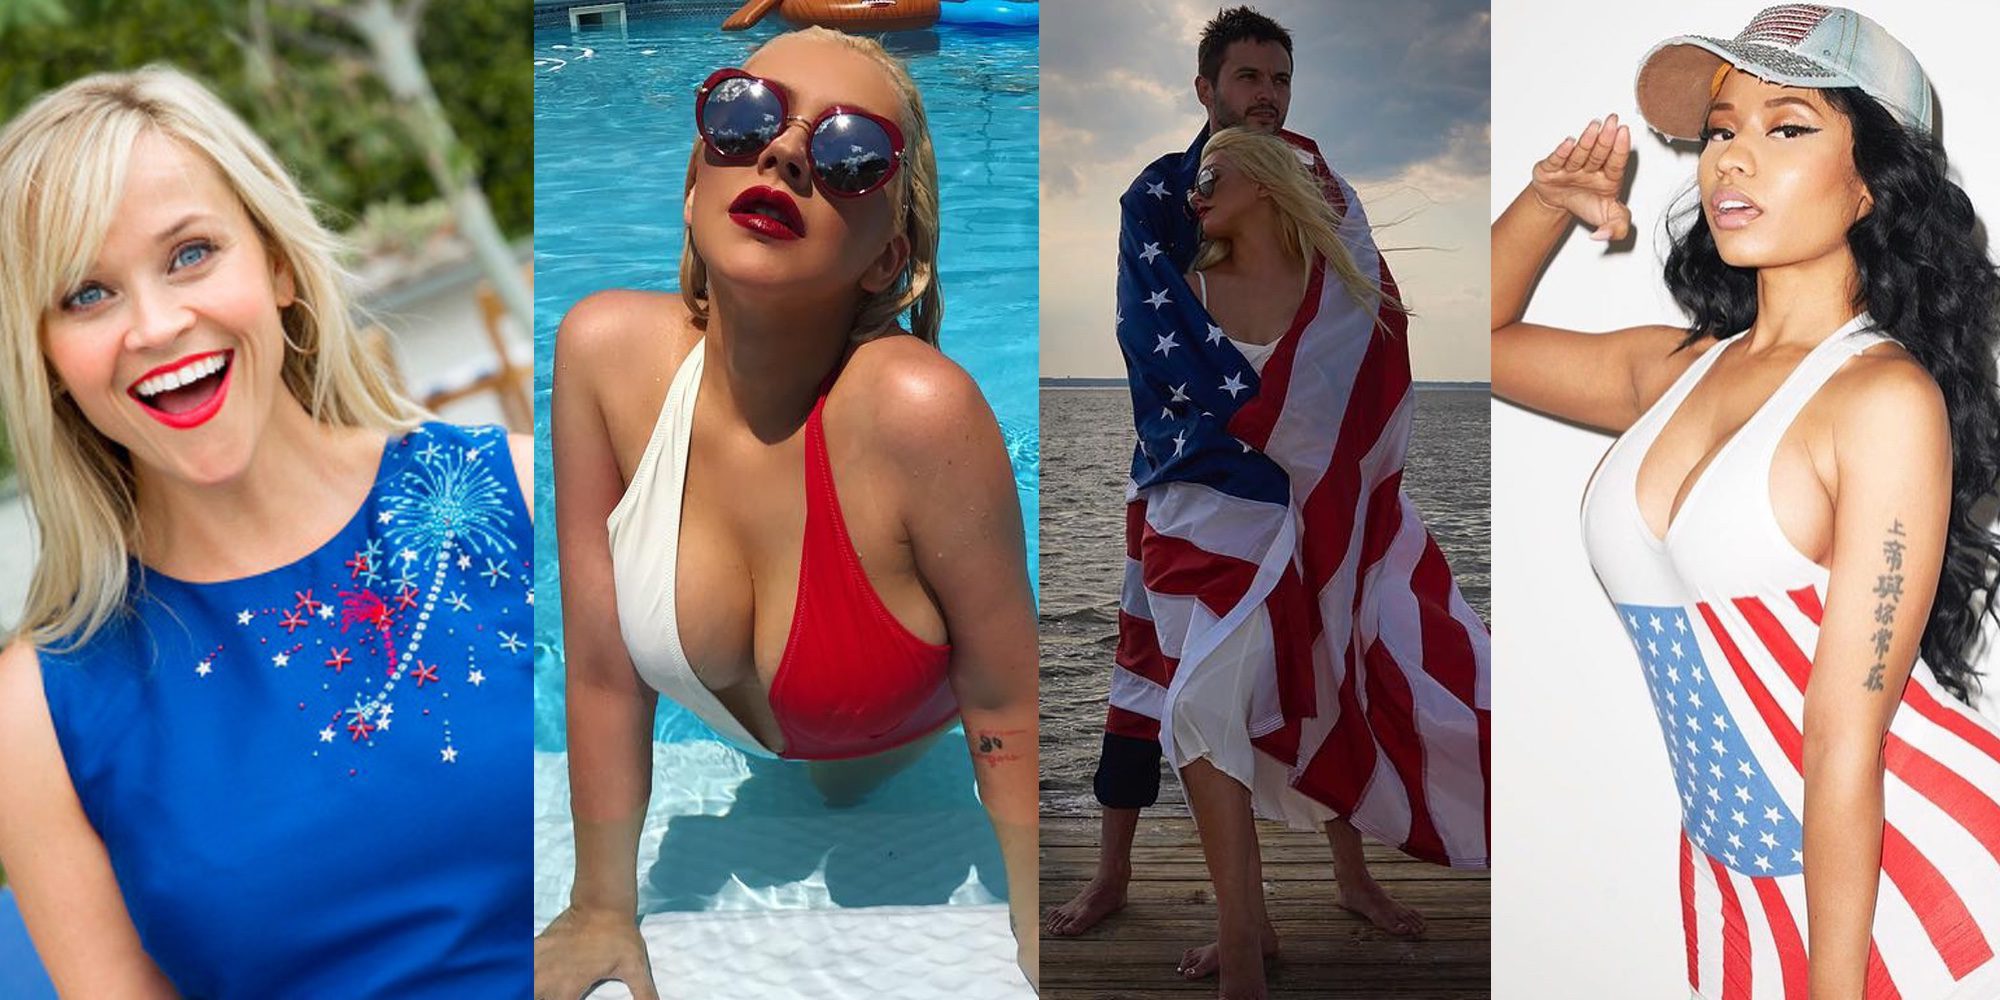 La familia Affleck, Sofía Vergara, Nicki Minaj... Los famosos celebran el 4 de julio, día de la Independencia